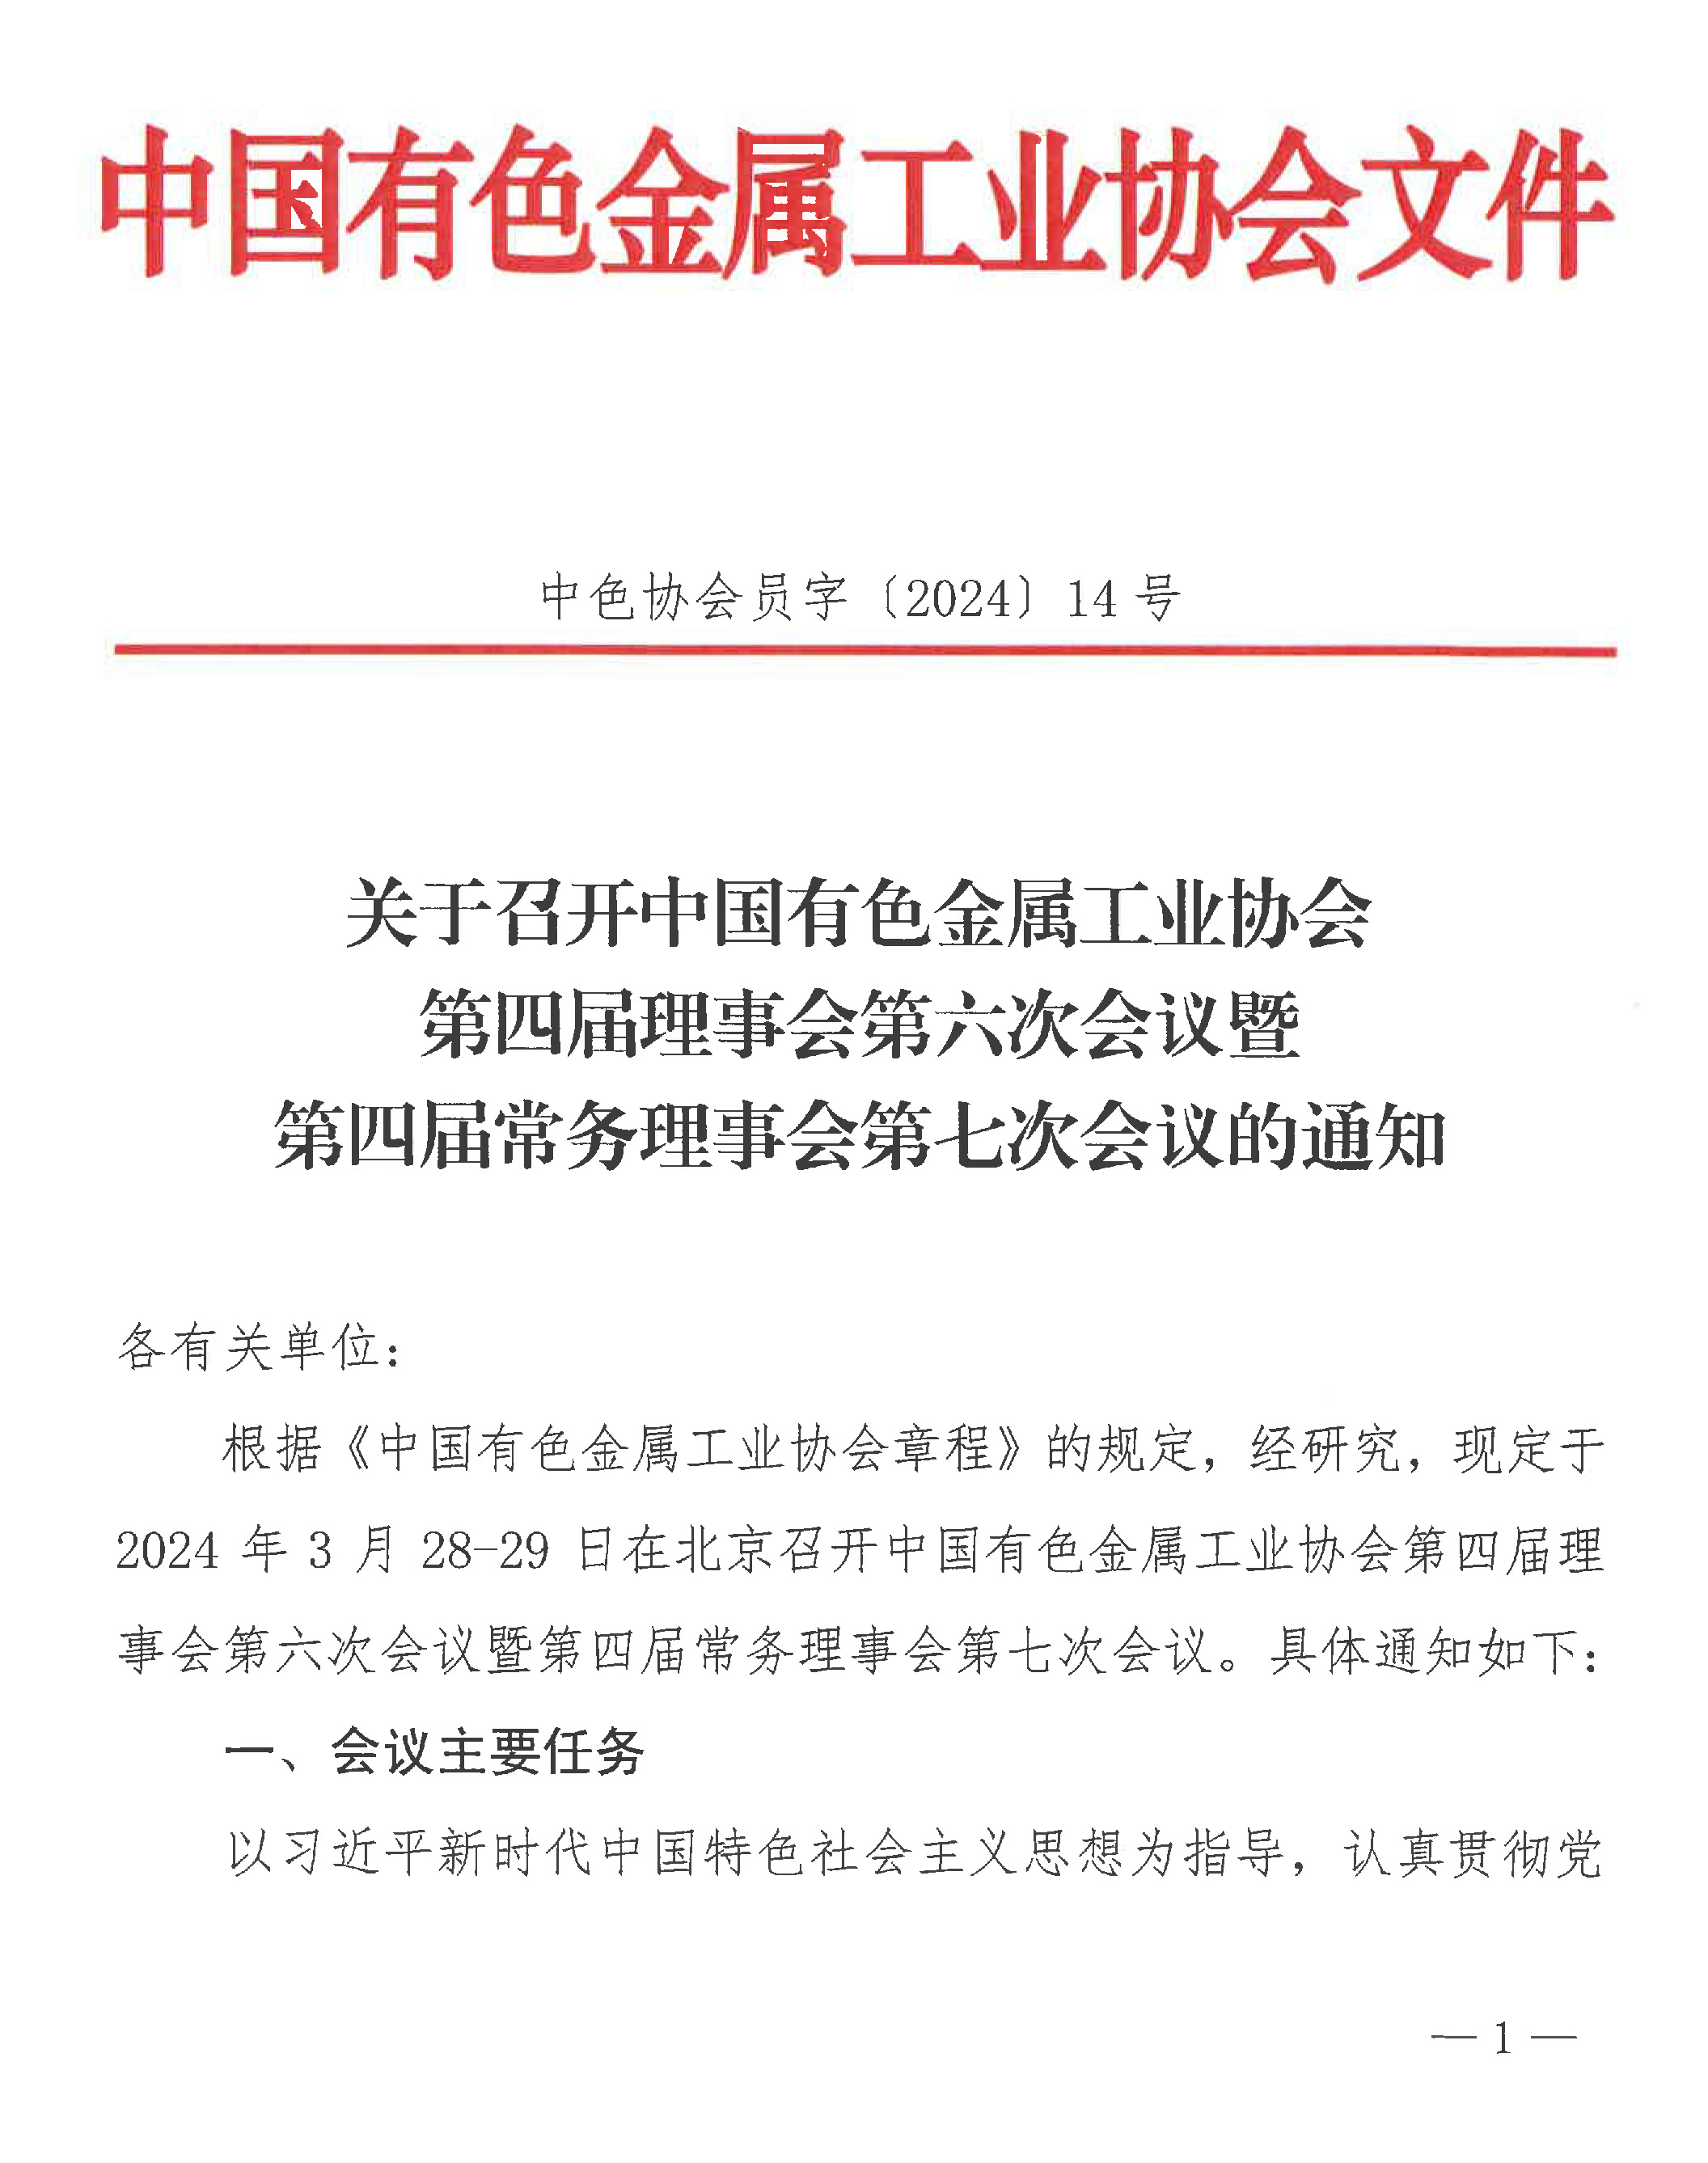 关于召开中国有色金属工业协会第四届理事会第六次会议暨第四届常务理事会第七次会议的通知